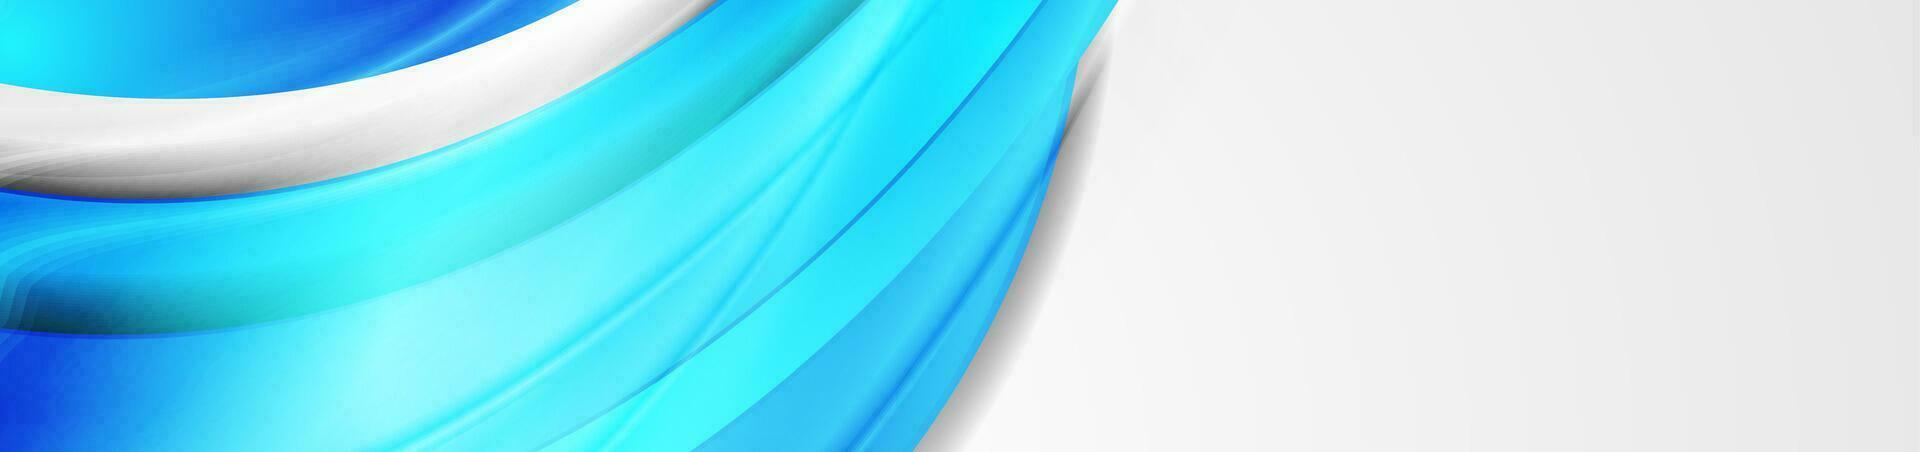 brilhante azul brilhante lustroso ondas abstrato fundo vetor